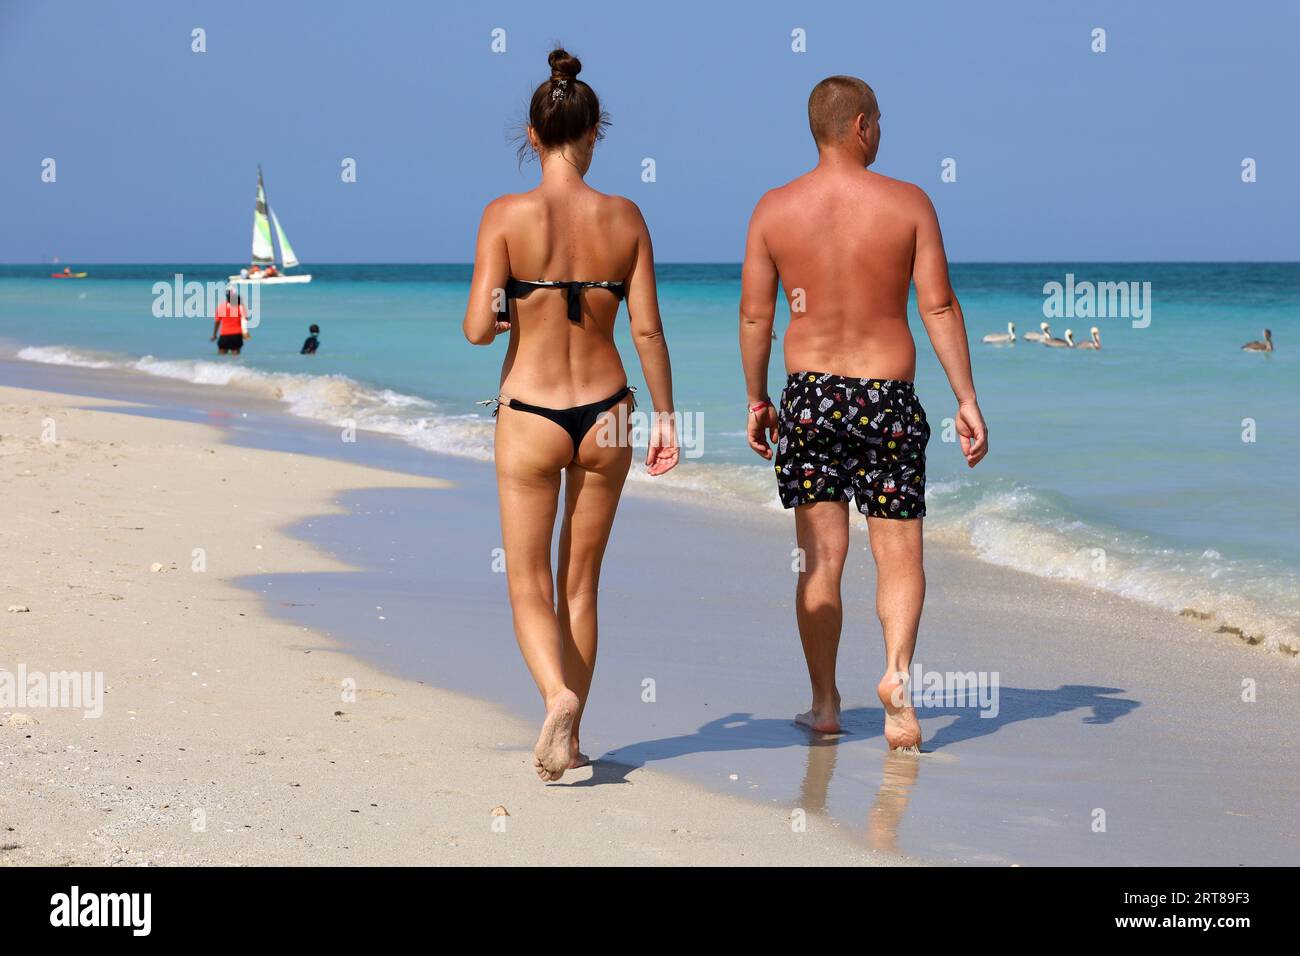 Ein Paar, das am Sand auf dem Meeresgrund spaziert. Sonniger Strand mit Touristenresort Stockfoto